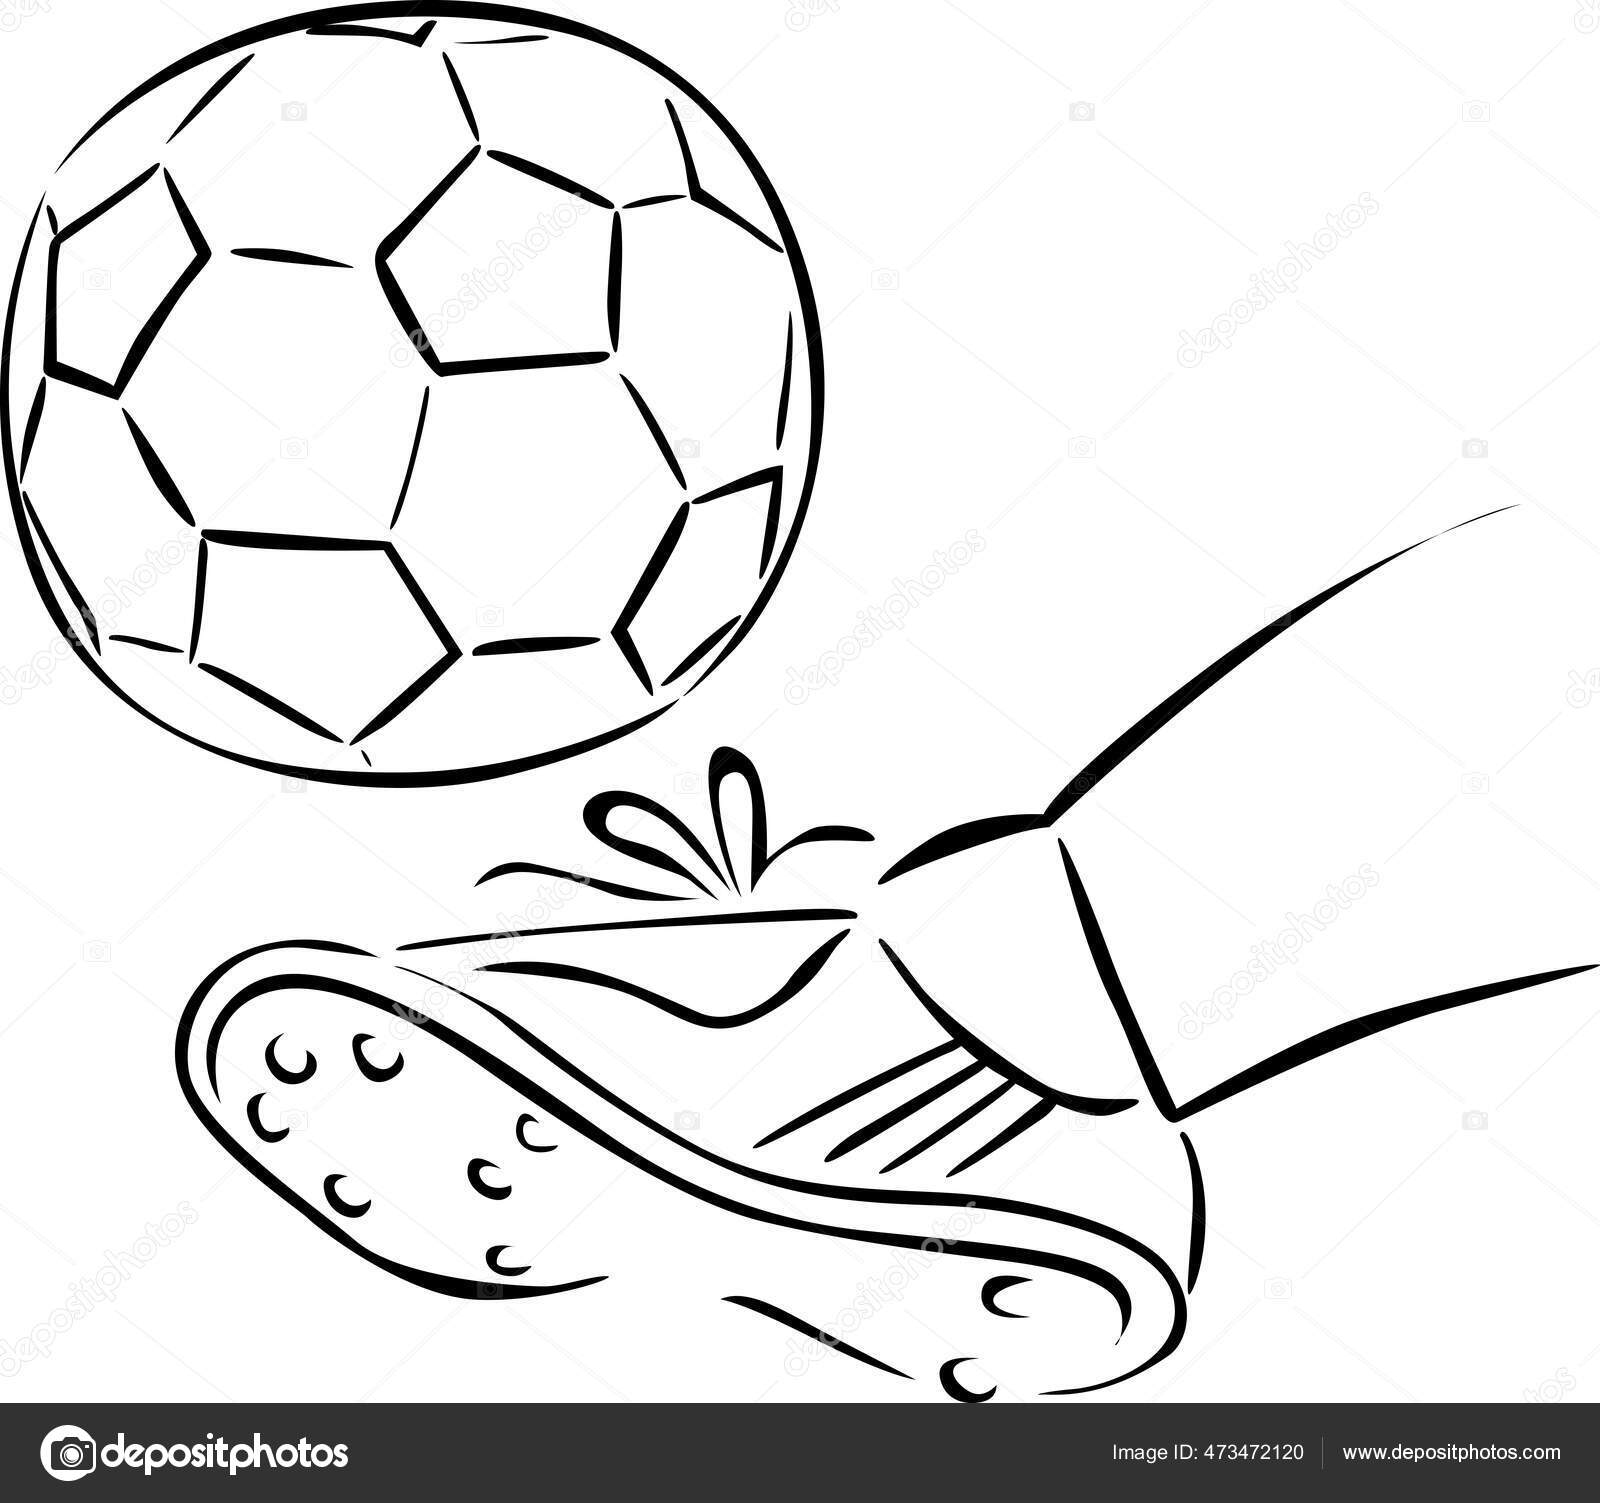 Une Illustration De Football De Ballon De Football Avec Un Fond